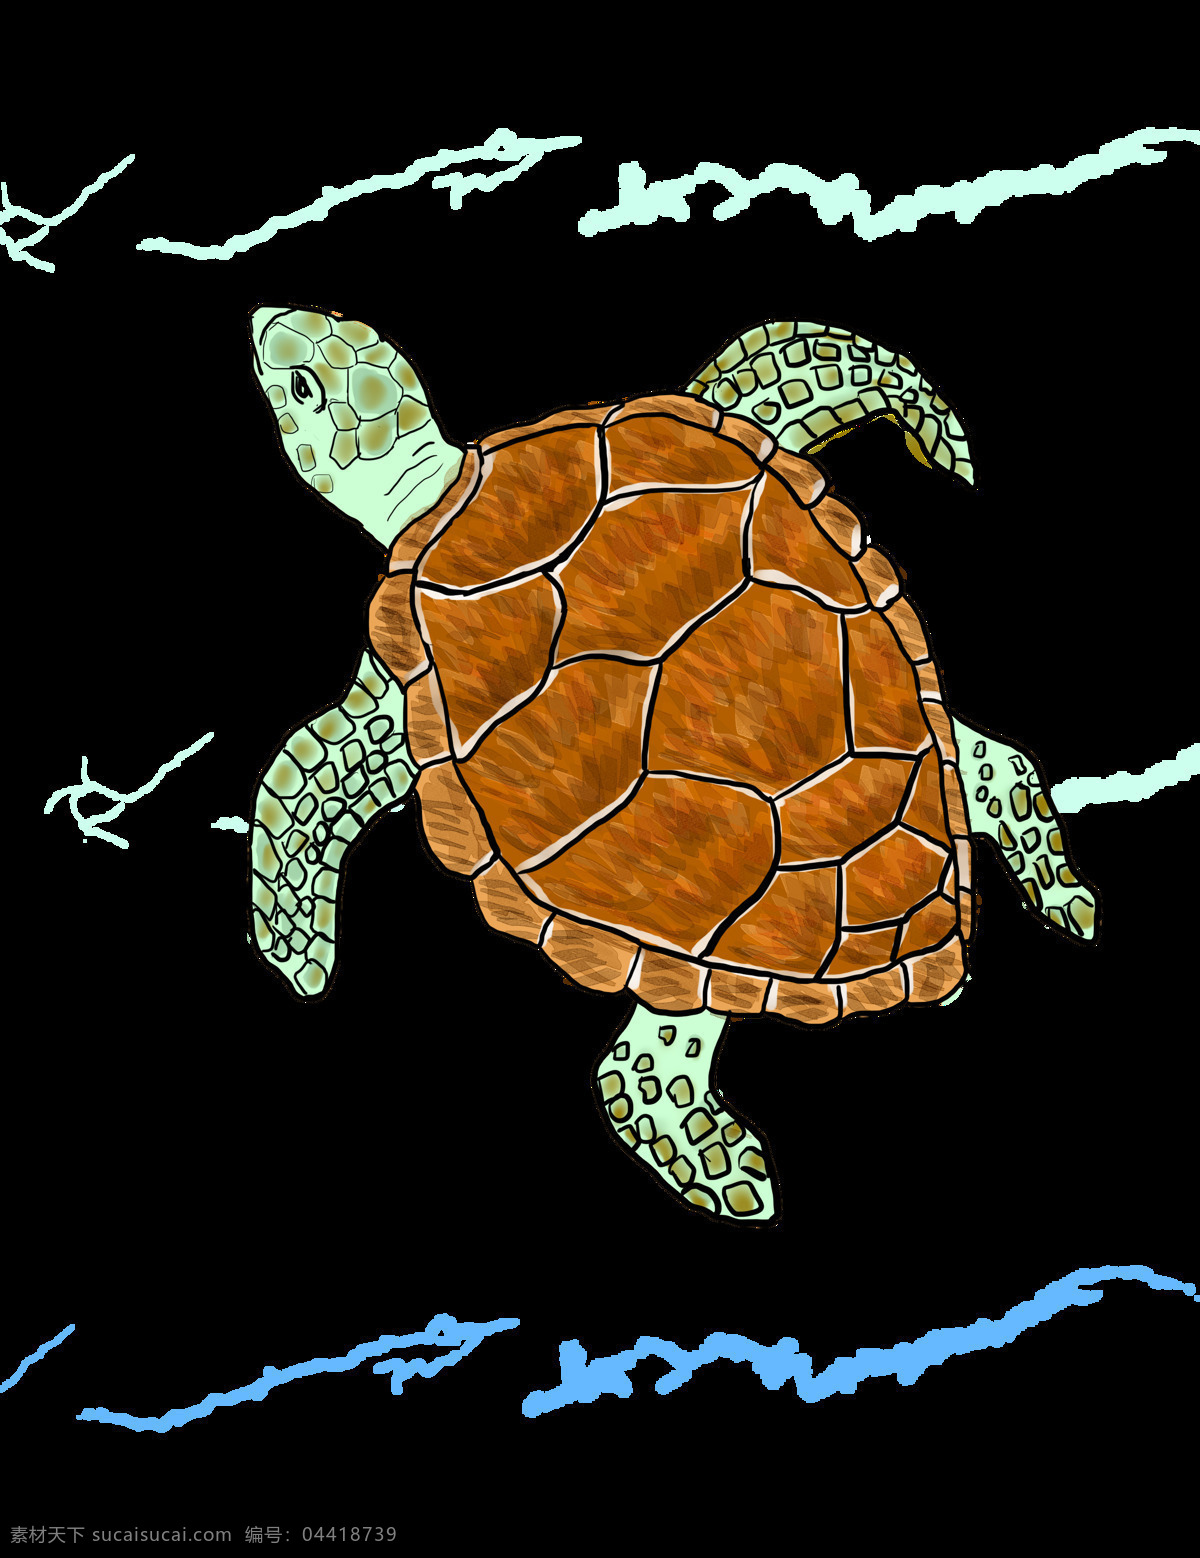 海洋生物 乌龟 龟 王八 玄武 大海龟 卡通 动漫 插画 动物世界 生物世界